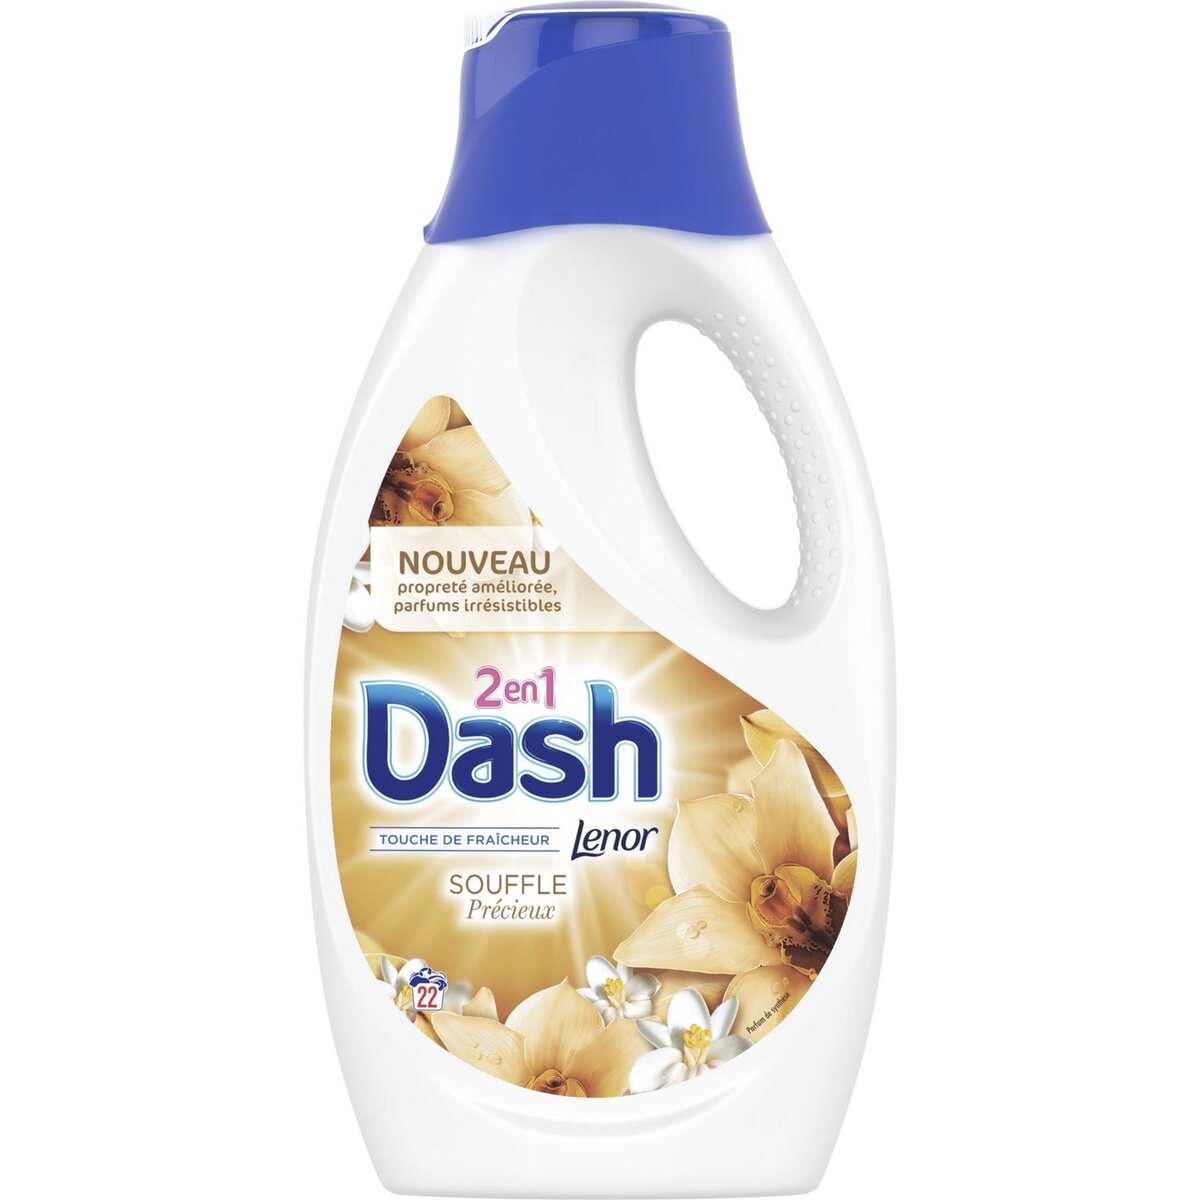 DASH Lessive liquide souffle précieux fraîcheur Lenor 22 lavages 1,21l